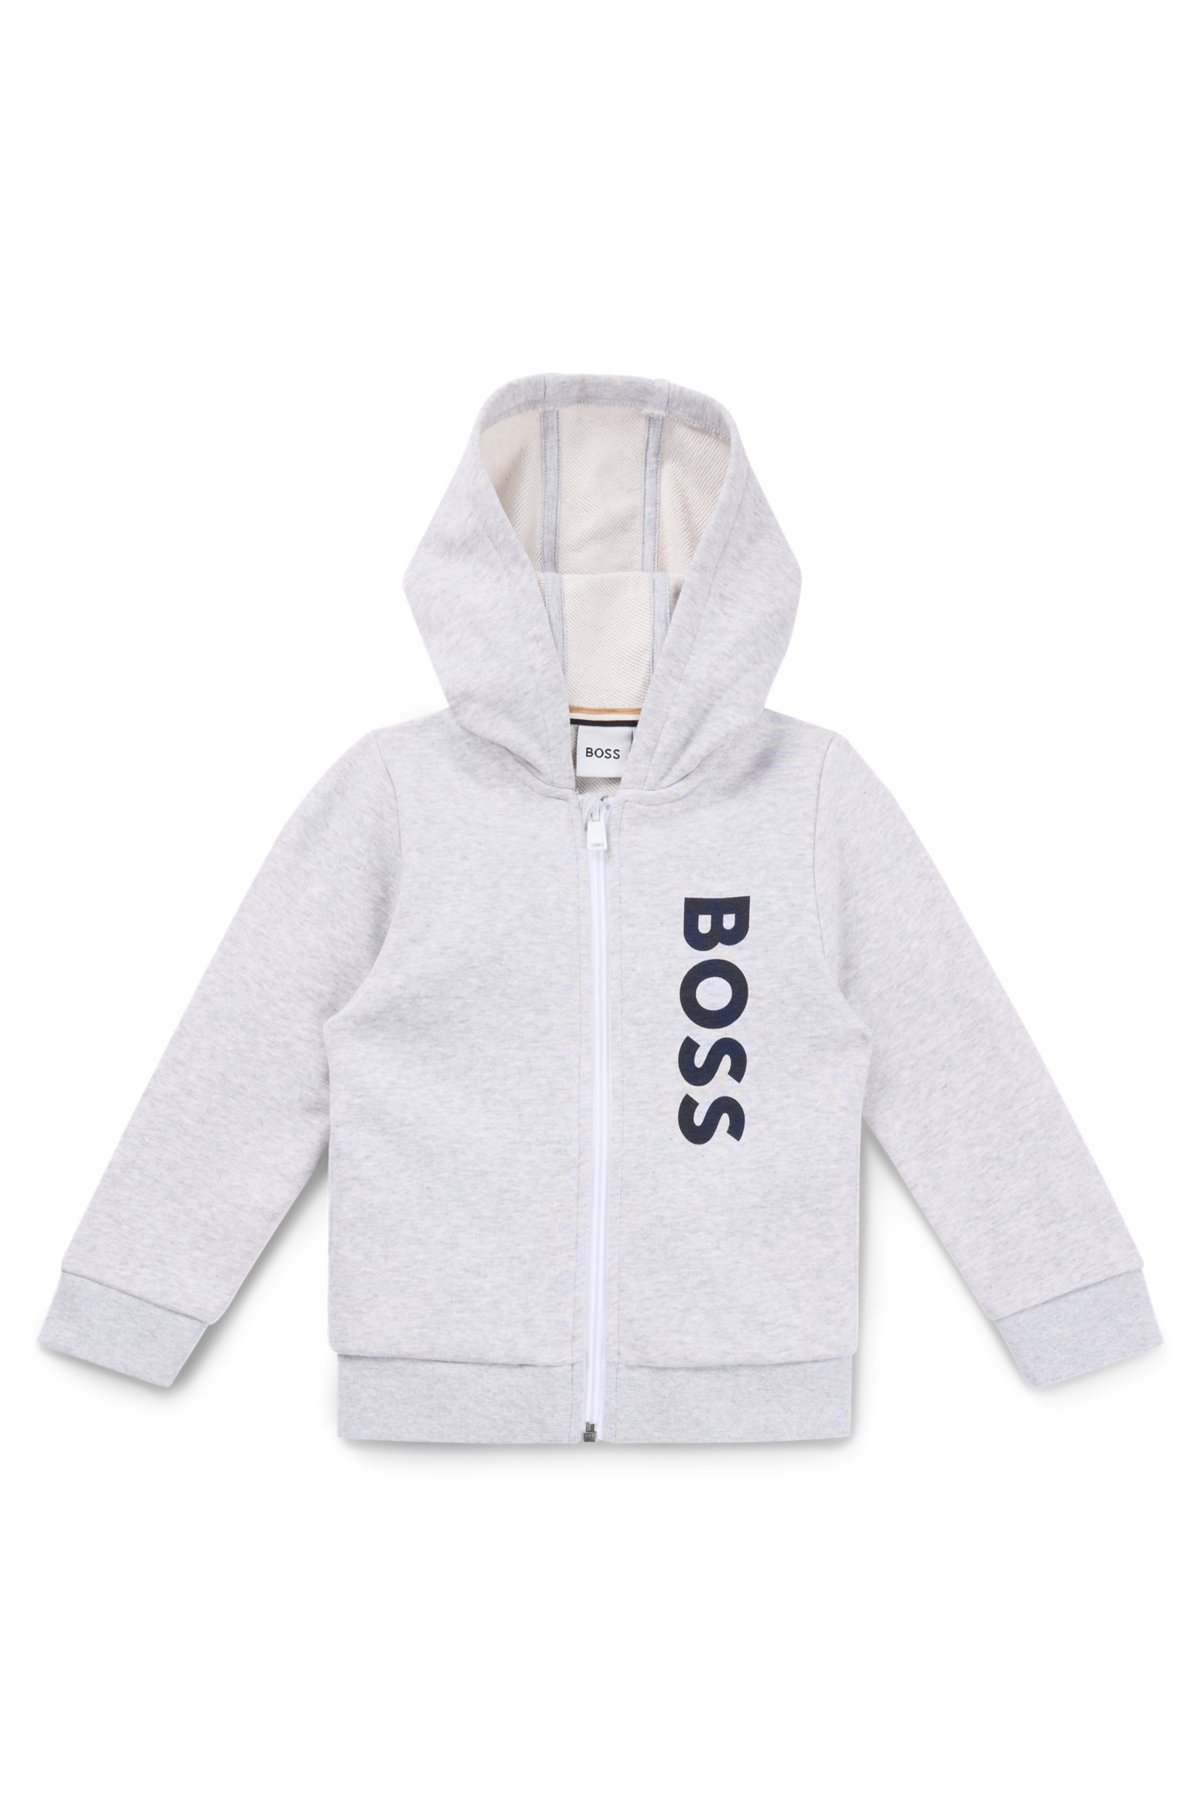 Kids' zip-up fleece hoodie with vertical logo print, Light Grey